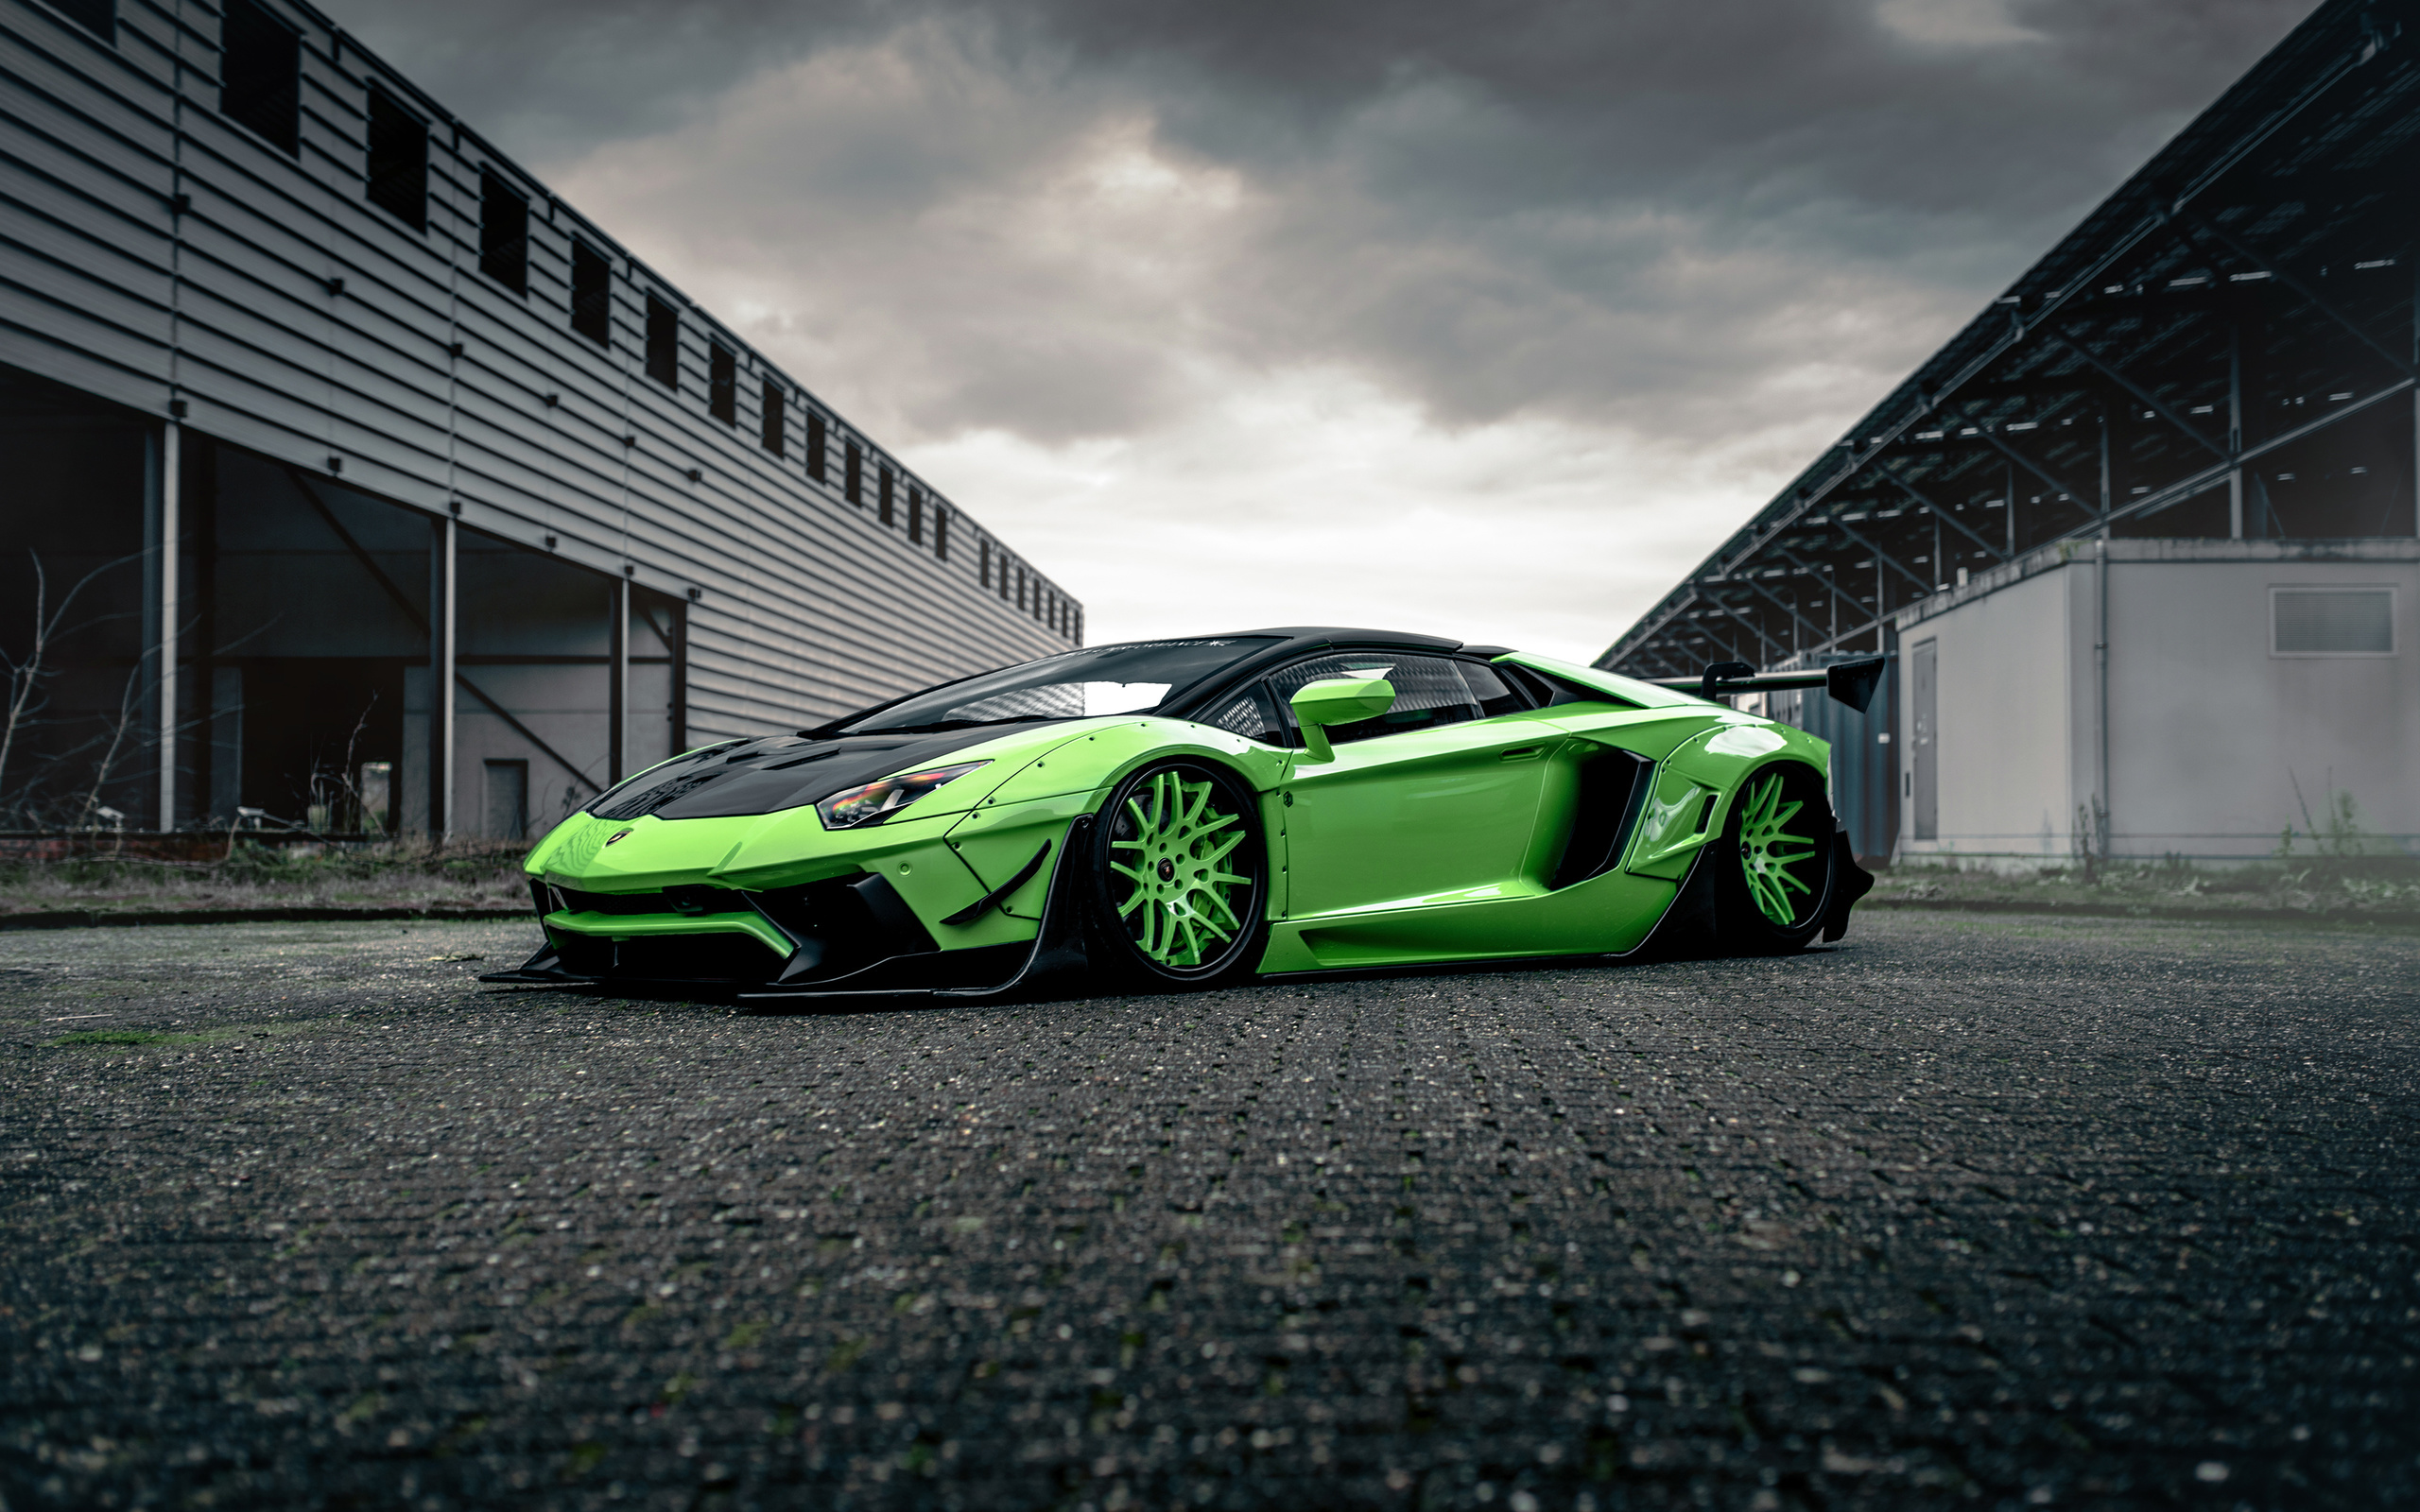 Free download wallpaper Lamborghini, Vehicles, Lamborghini Aventador Sv on your PC desktop